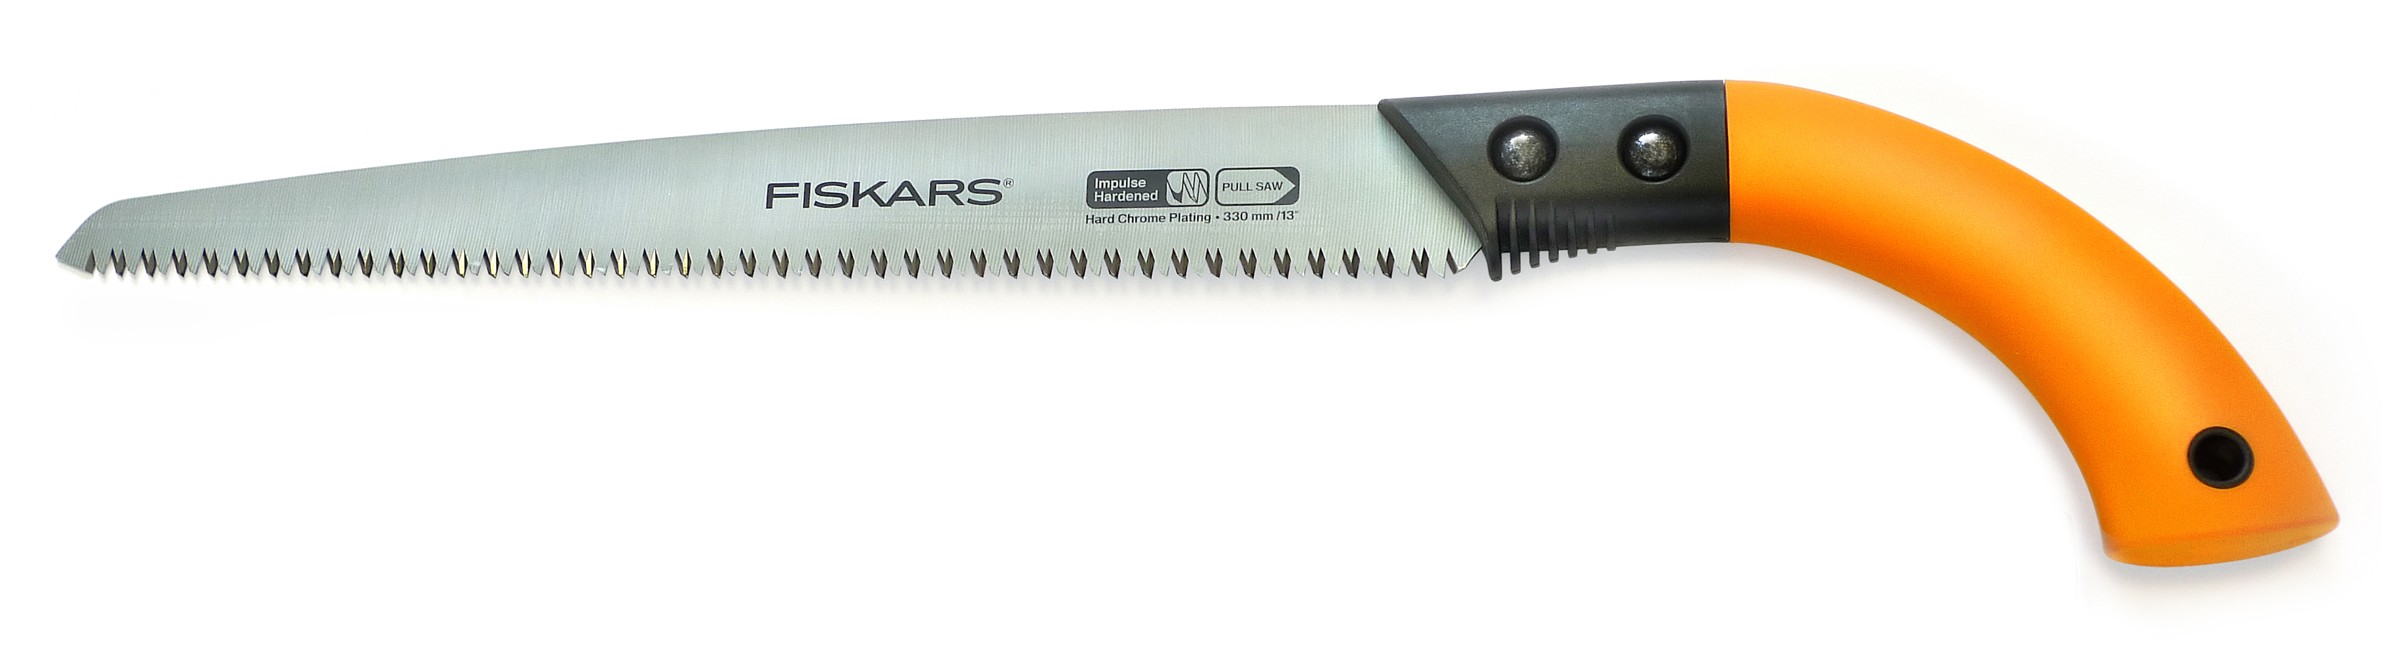 Fiskars - Fixed Blade Saw SW84